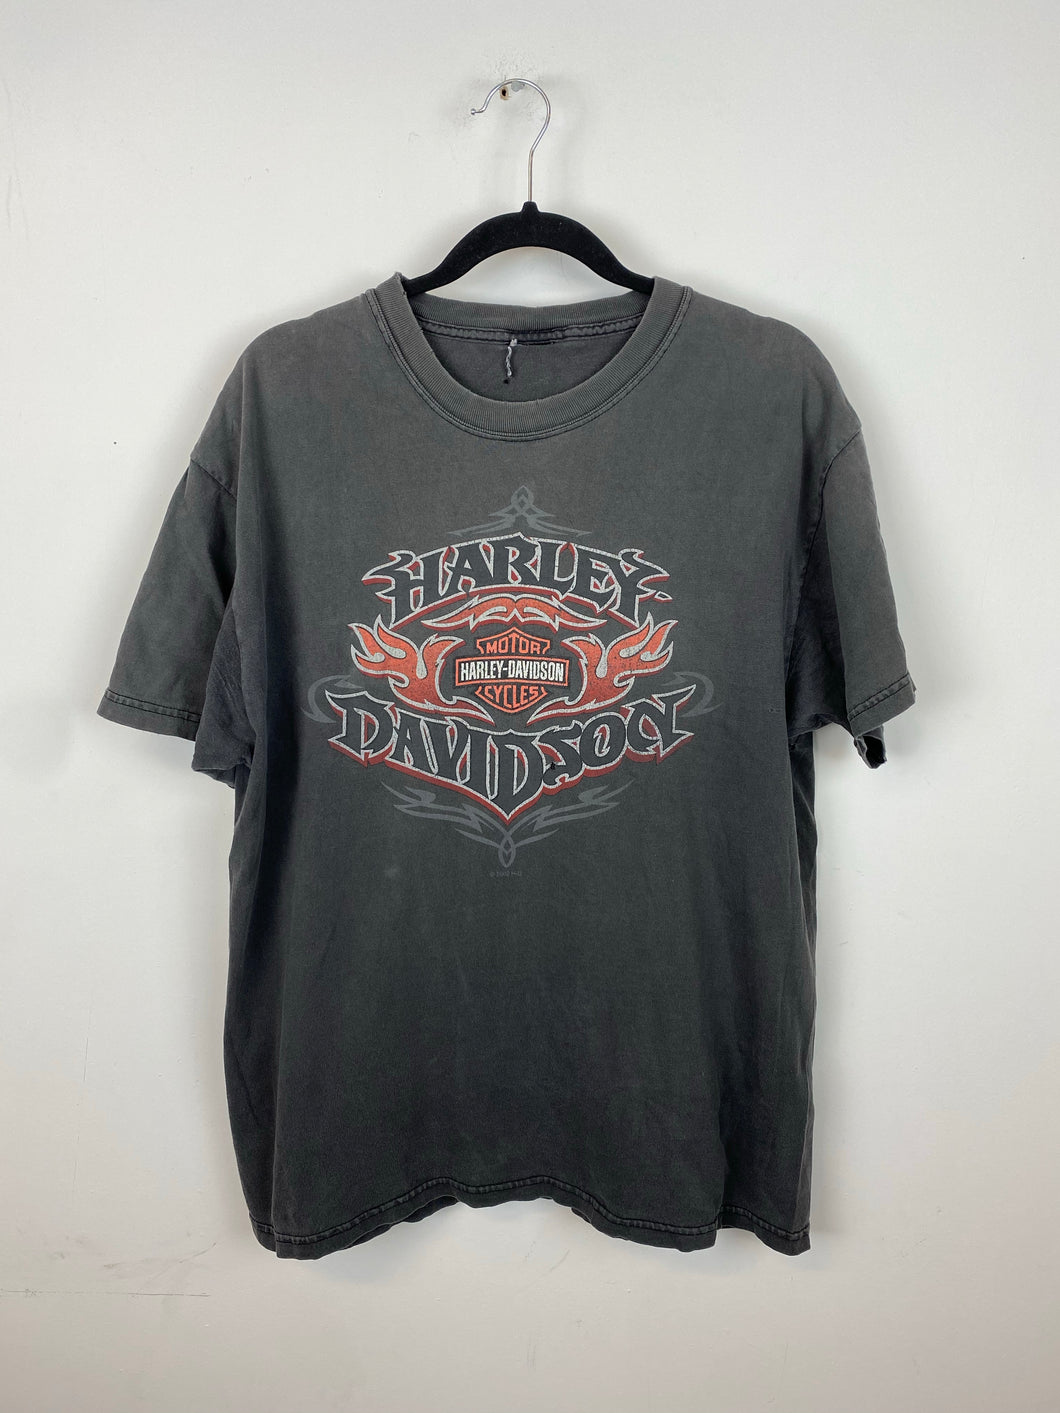 Vintage Front and back Harley Davidson t shirt - S